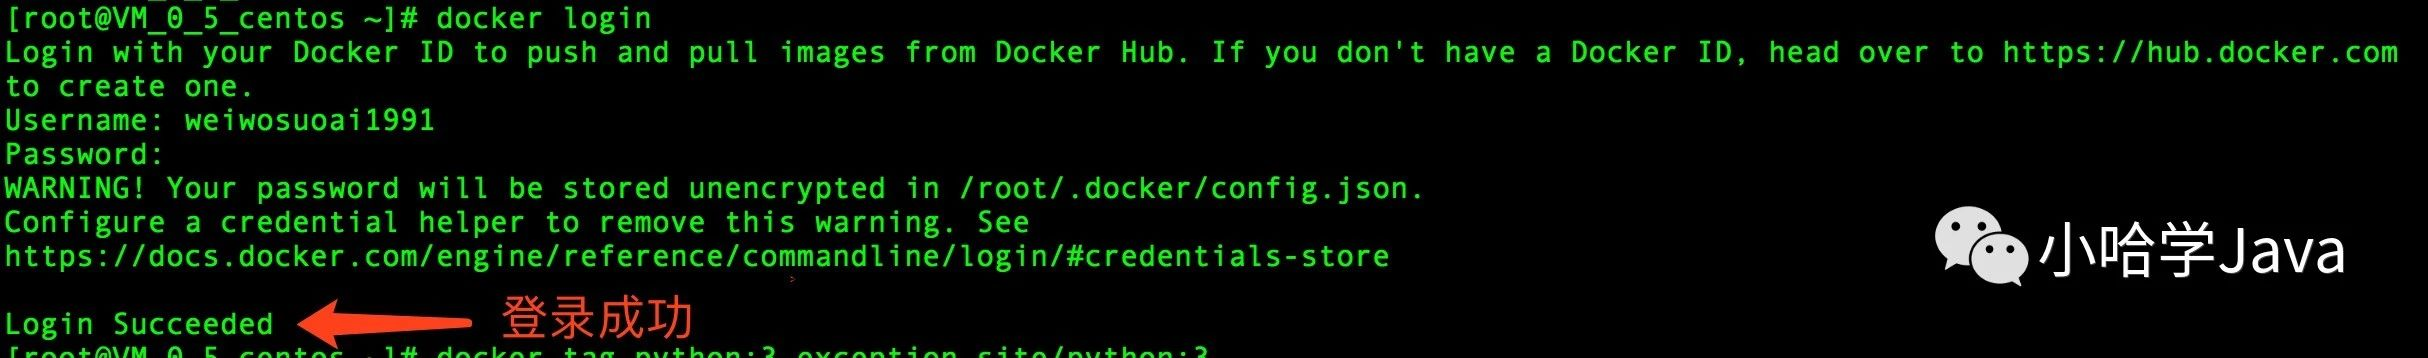 Command line login Docker ID